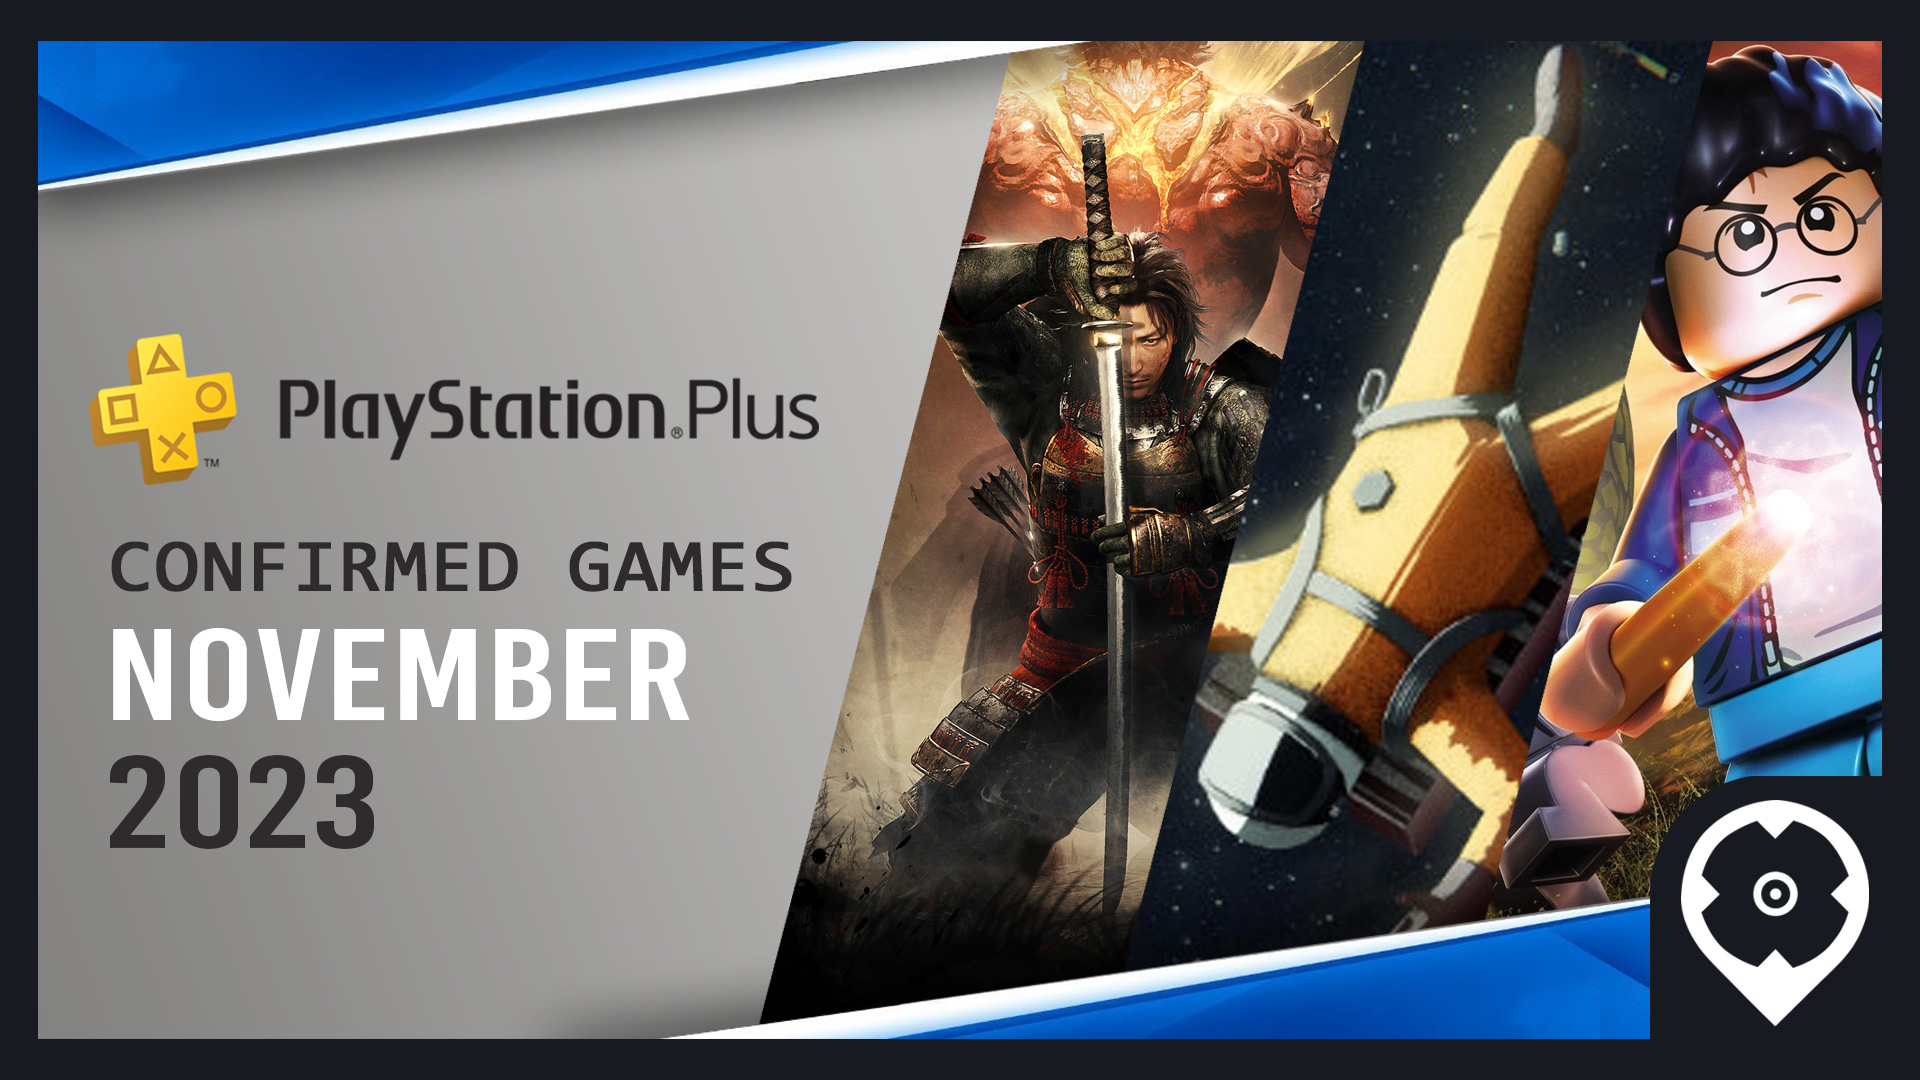 Detalhes da Coleção PS Plus + os jogos gratuitos de novembro para